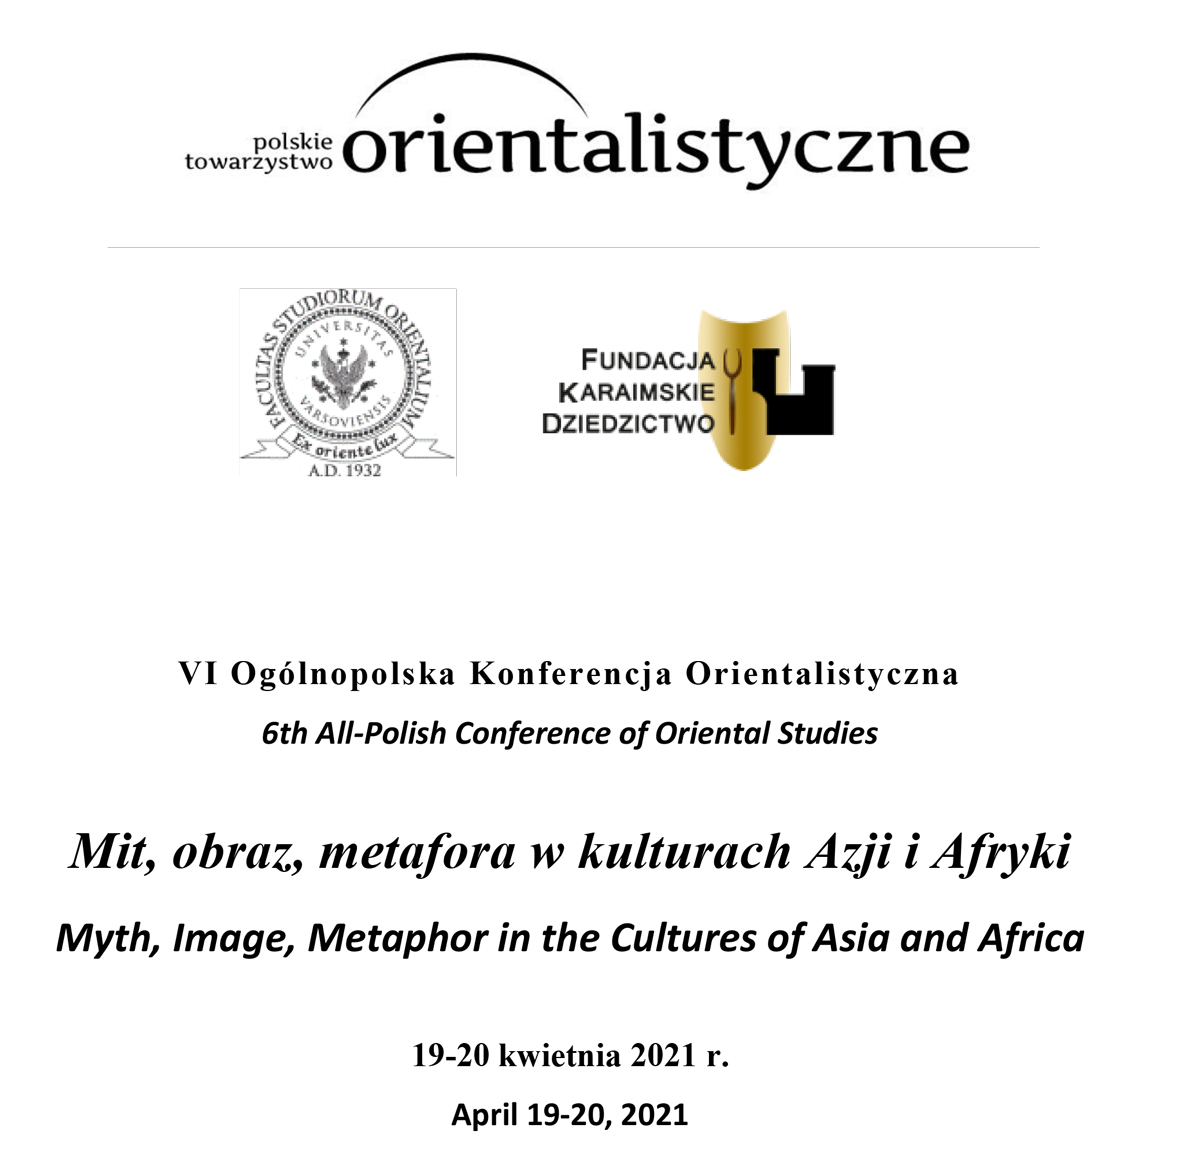 VI Konferencja Polskiego Towarzystwa Orientalistycznego